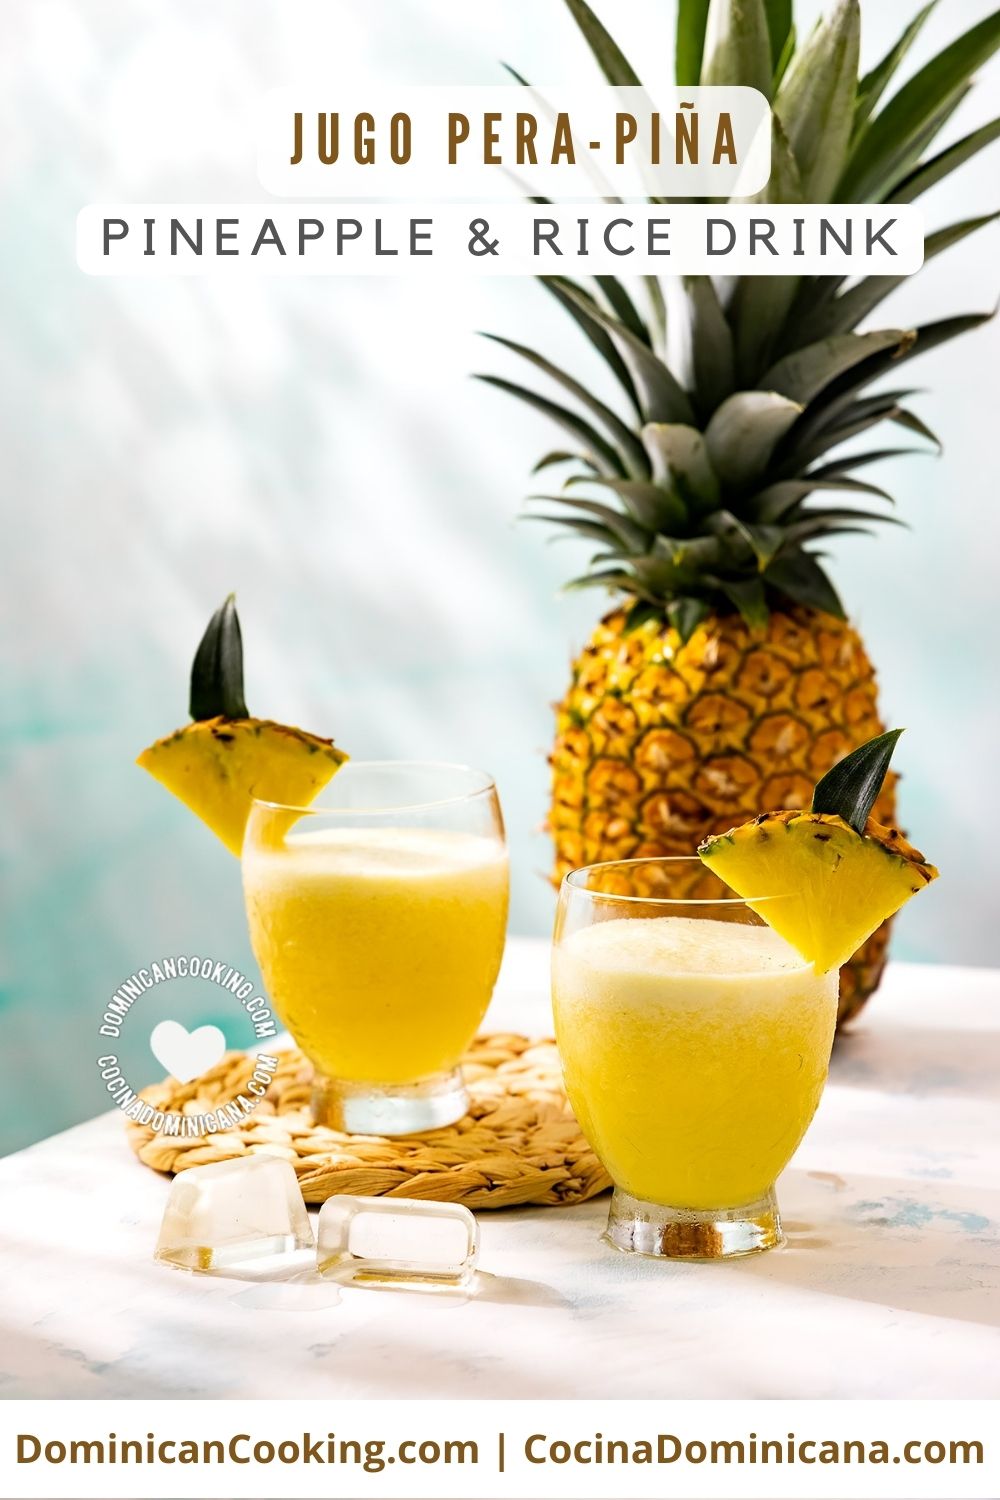 Jugo Pera-Piña (pineapple and rice drink) recipe.